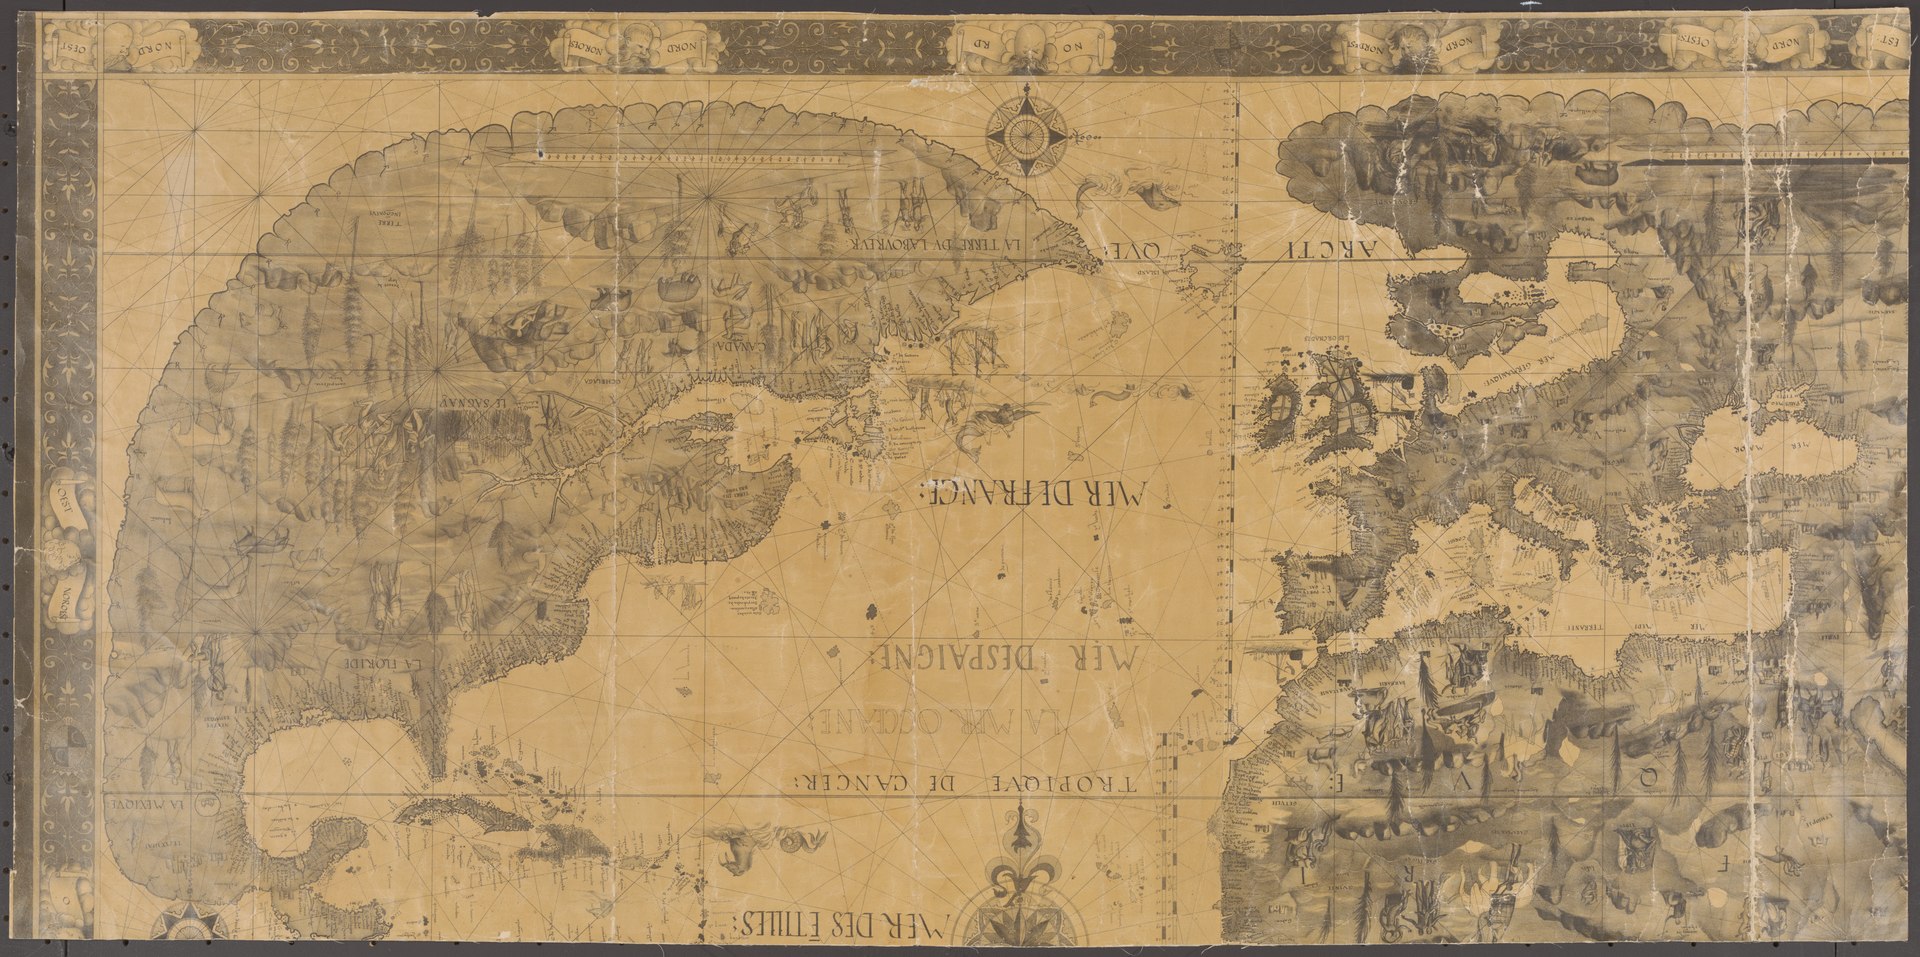 Pierre Desceliers Map, 1546